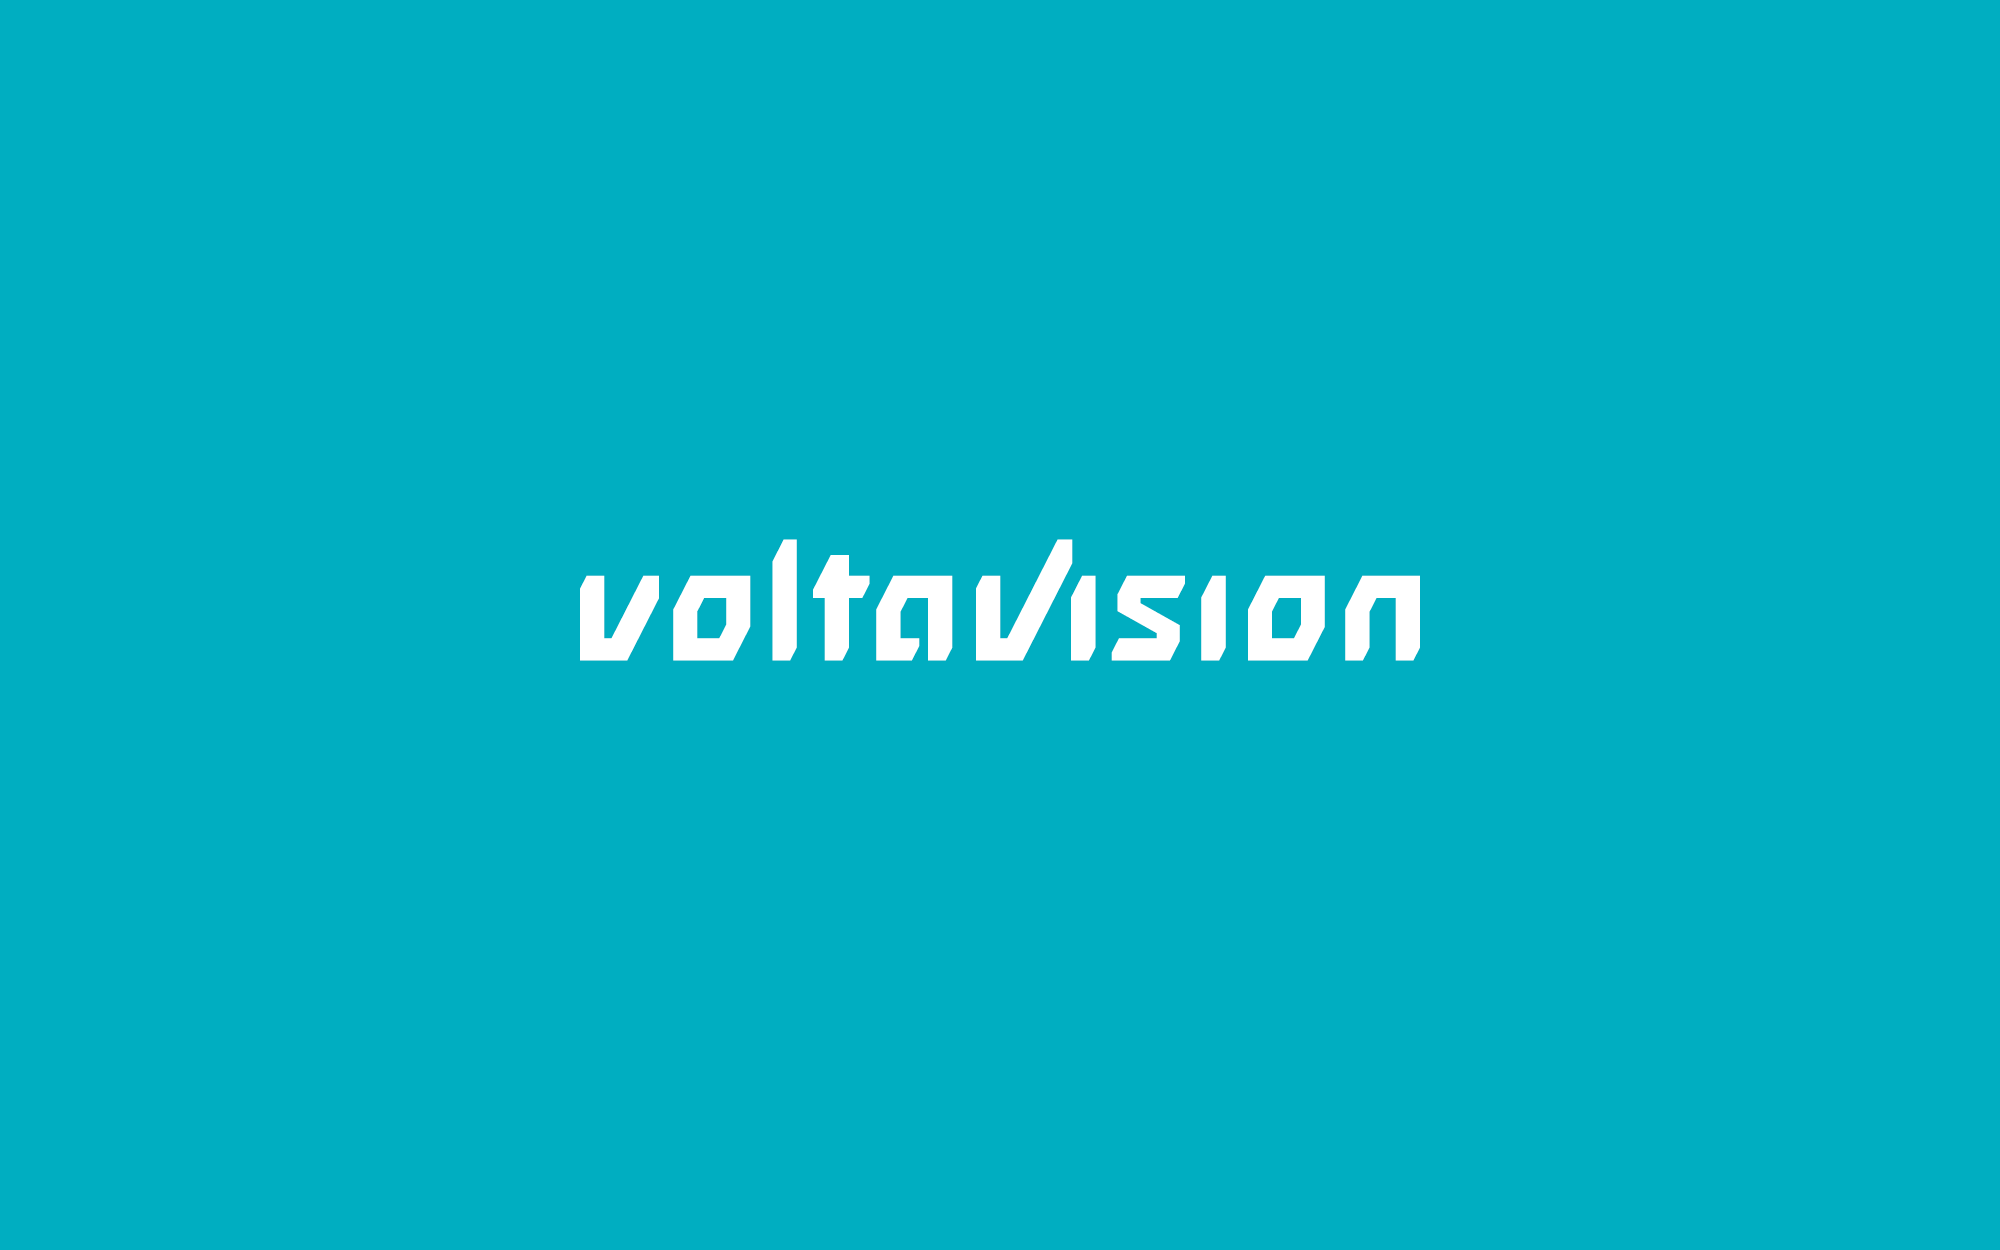 Weißes Voltavision-Logo auf marbigem Grund